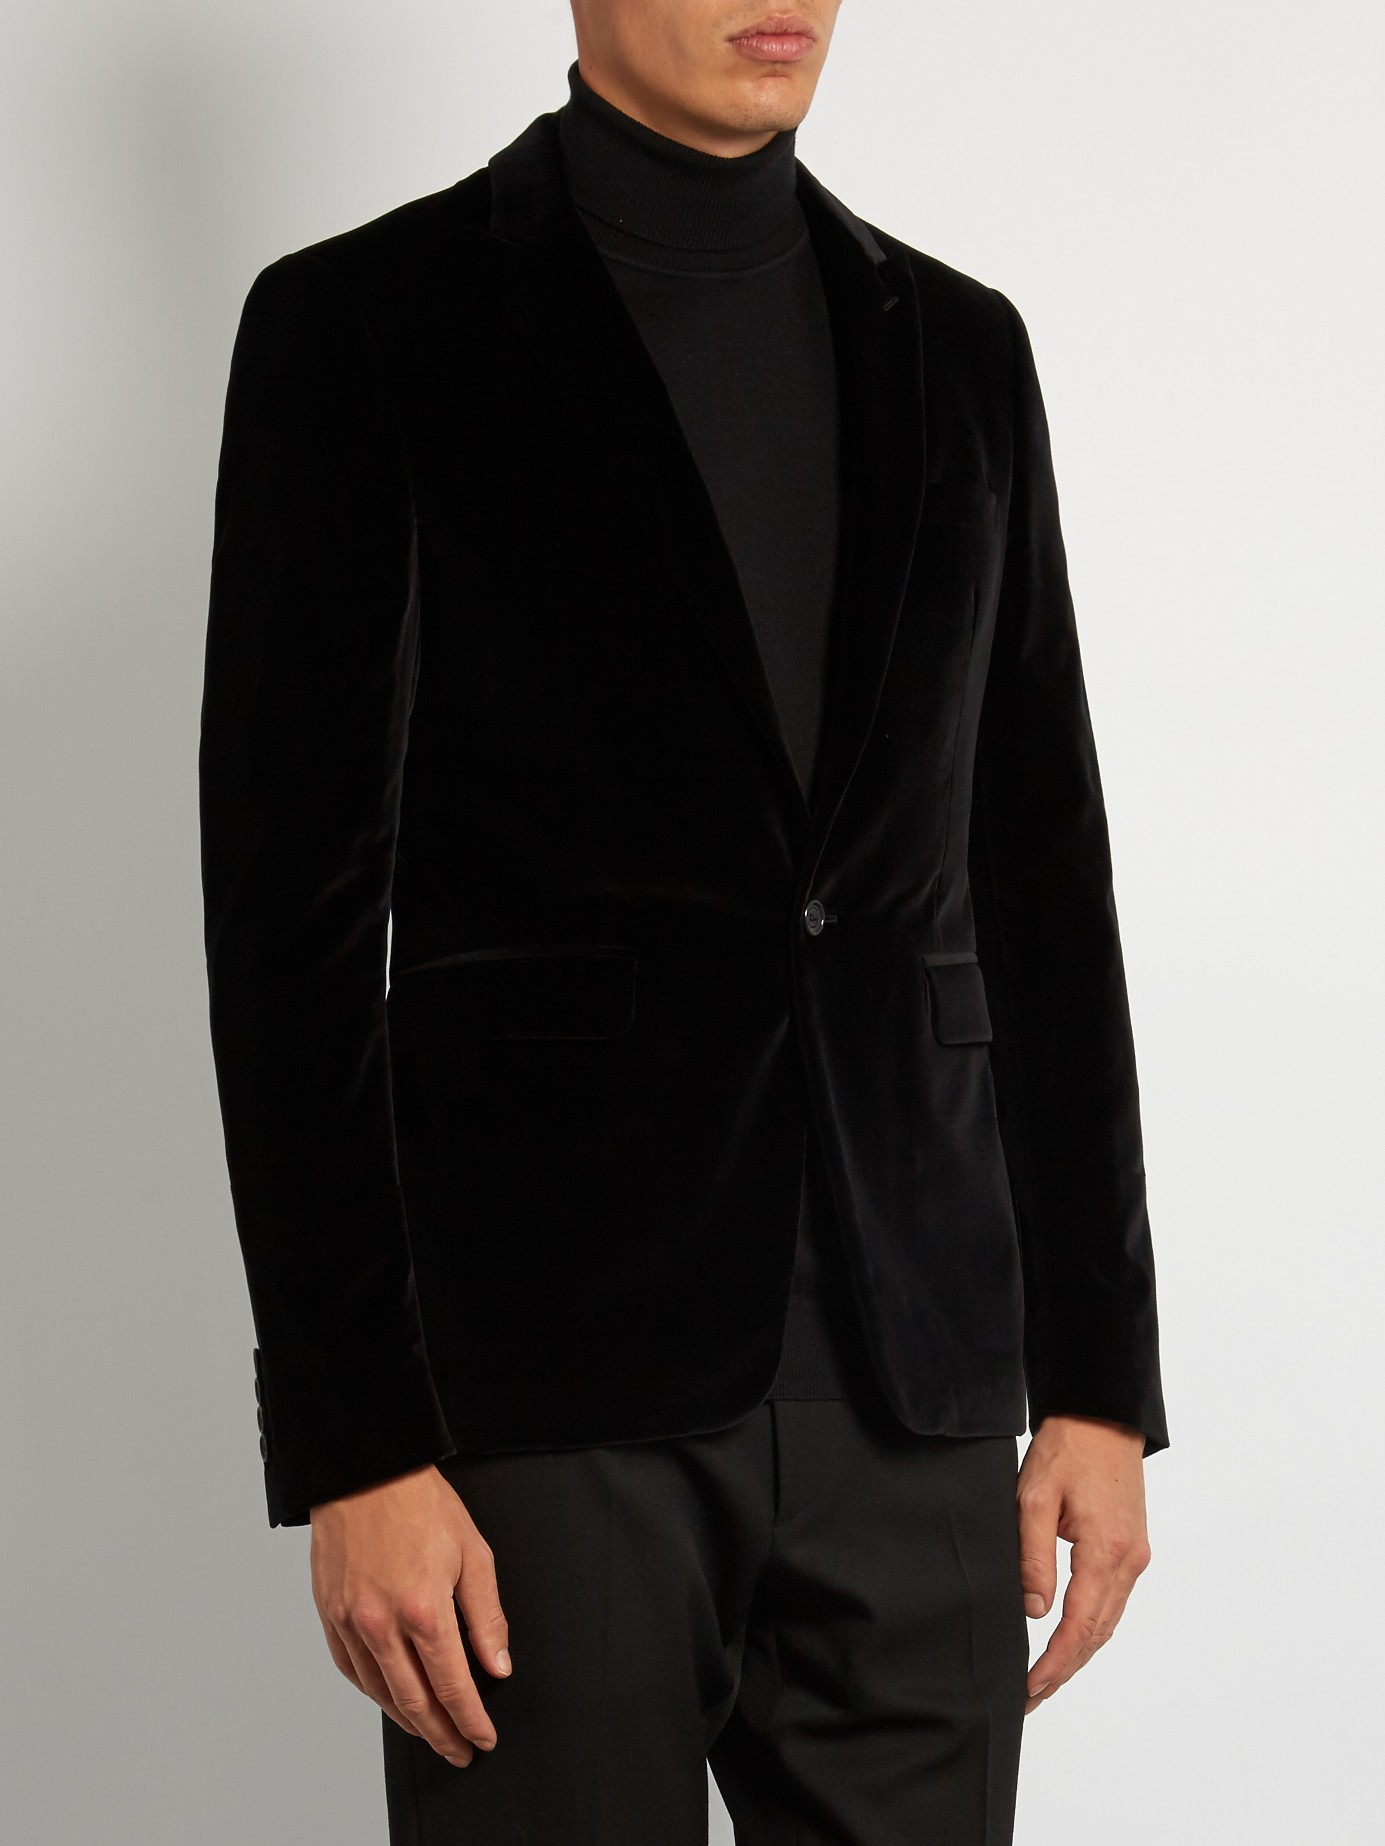 Lyst - Burberry Tailored Velvet Dinner Jacket in Black for Men